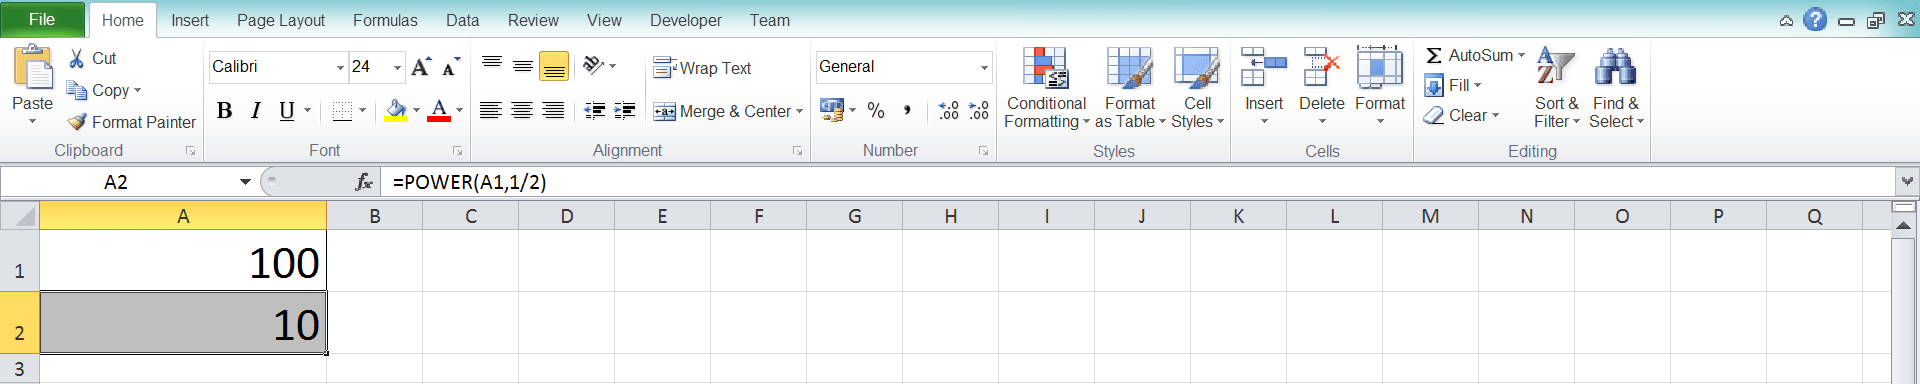 Cara Menghitung Akar di Excel Beserta Berbagai Rumus dan Fungsinya - Screenshot Langkah 2-8